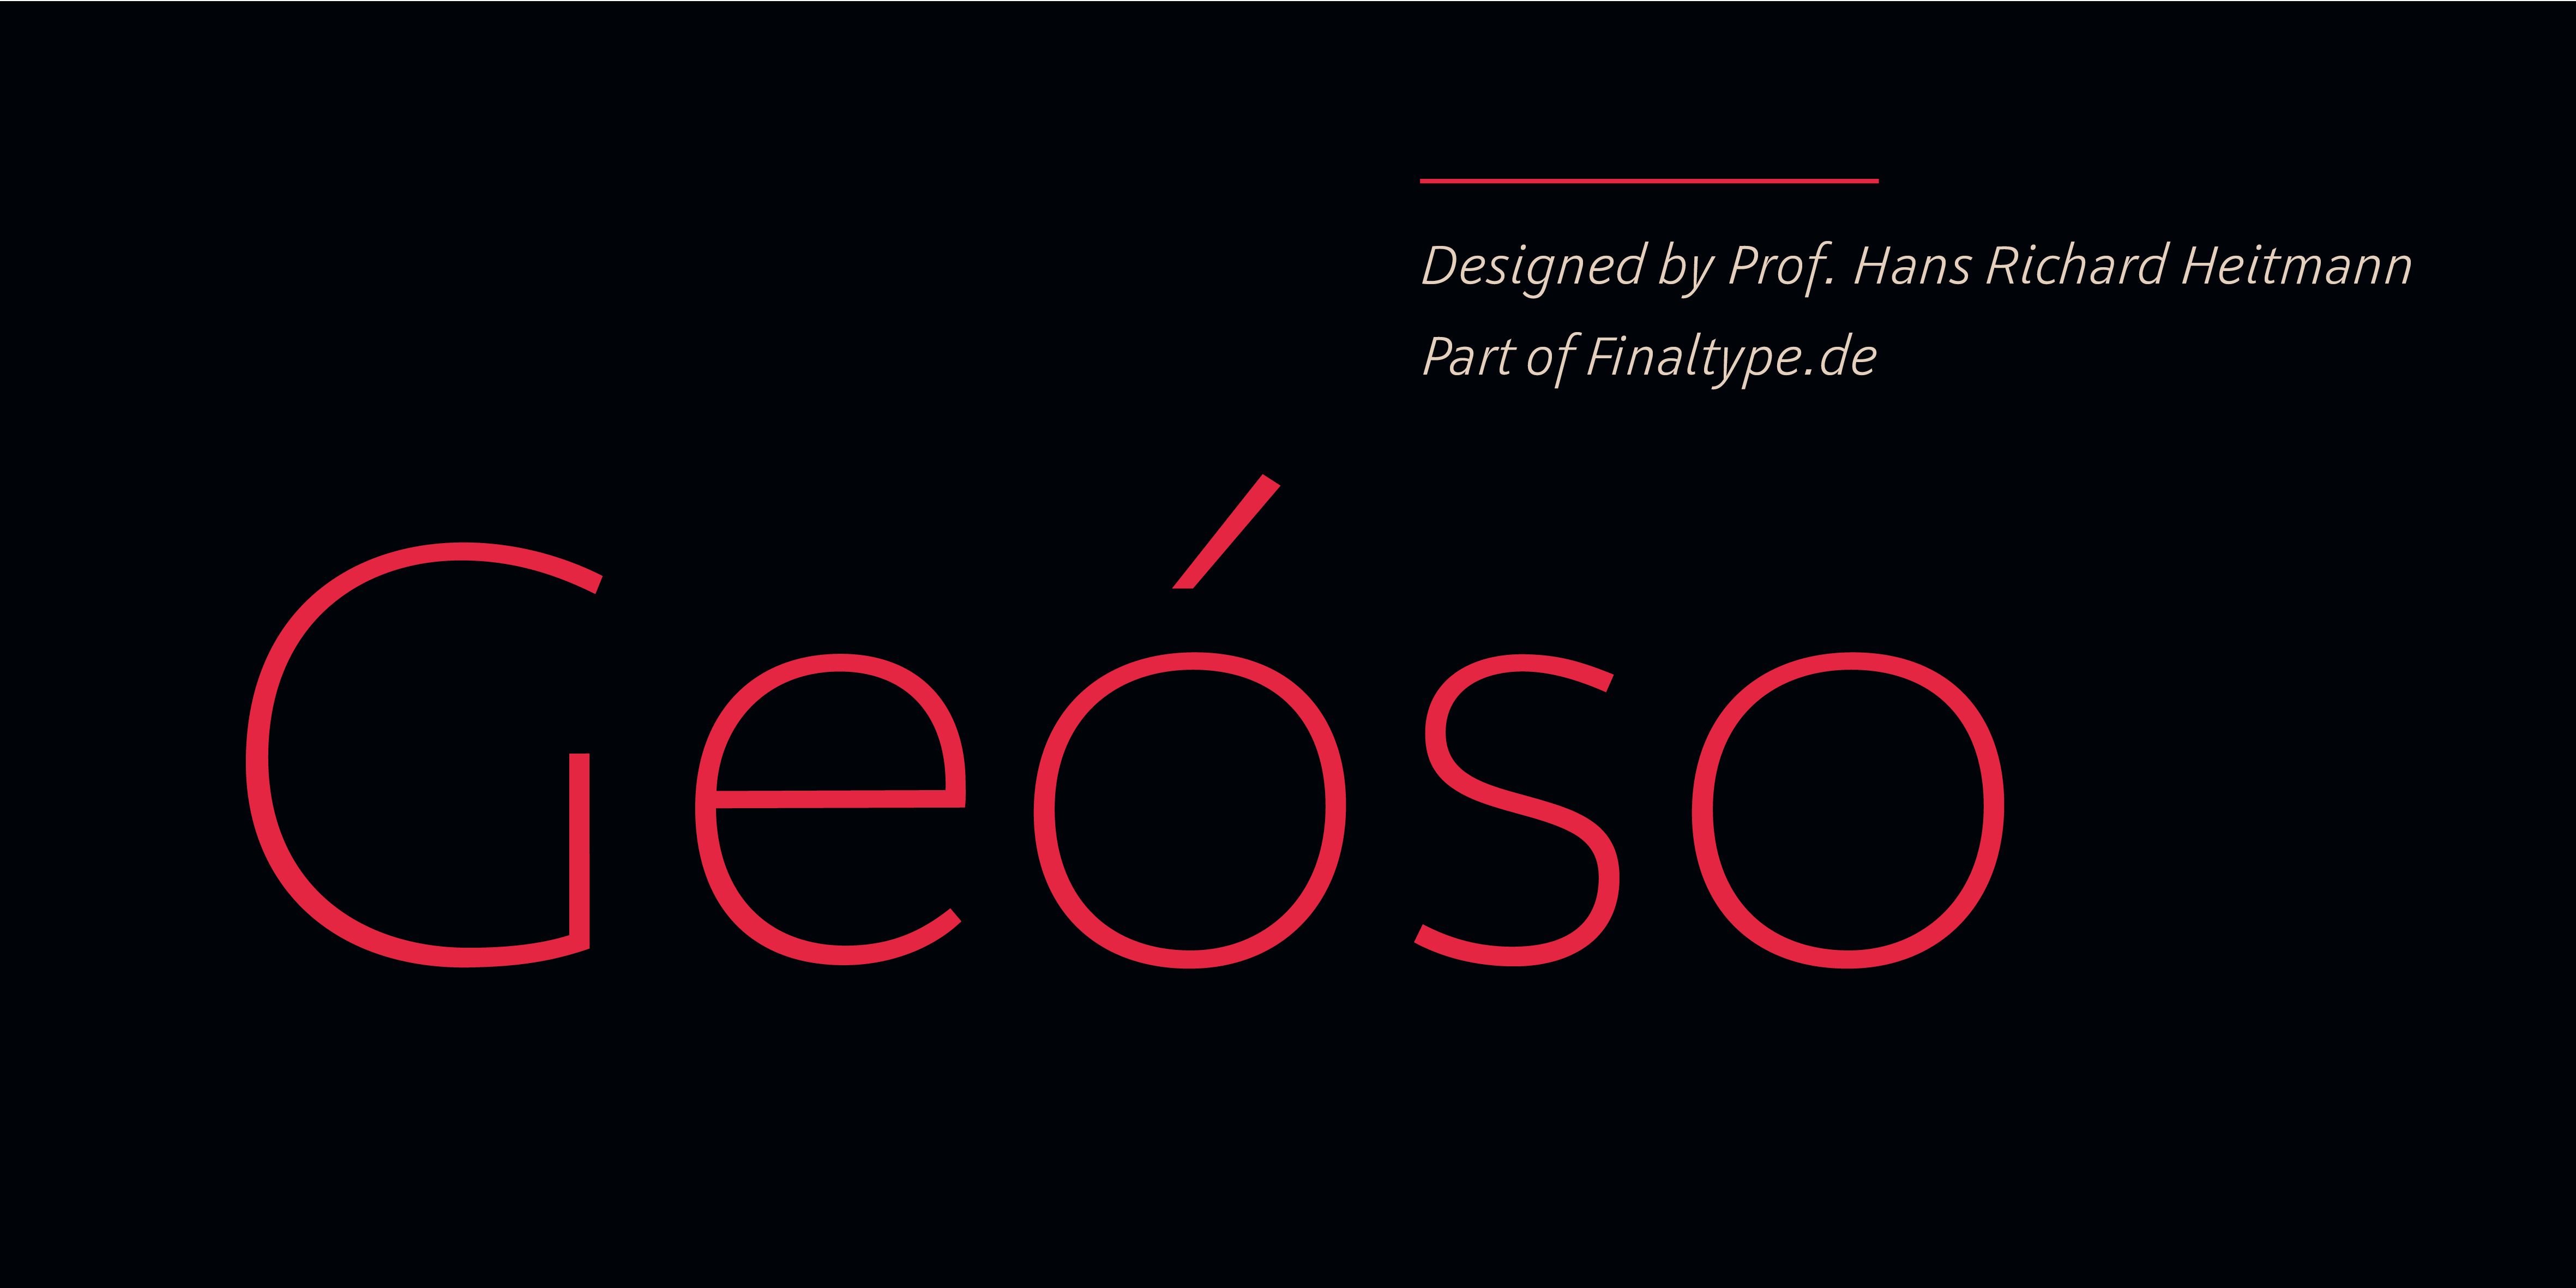 Poster: Geóso designed by Prof. Hans Richard Heitmann